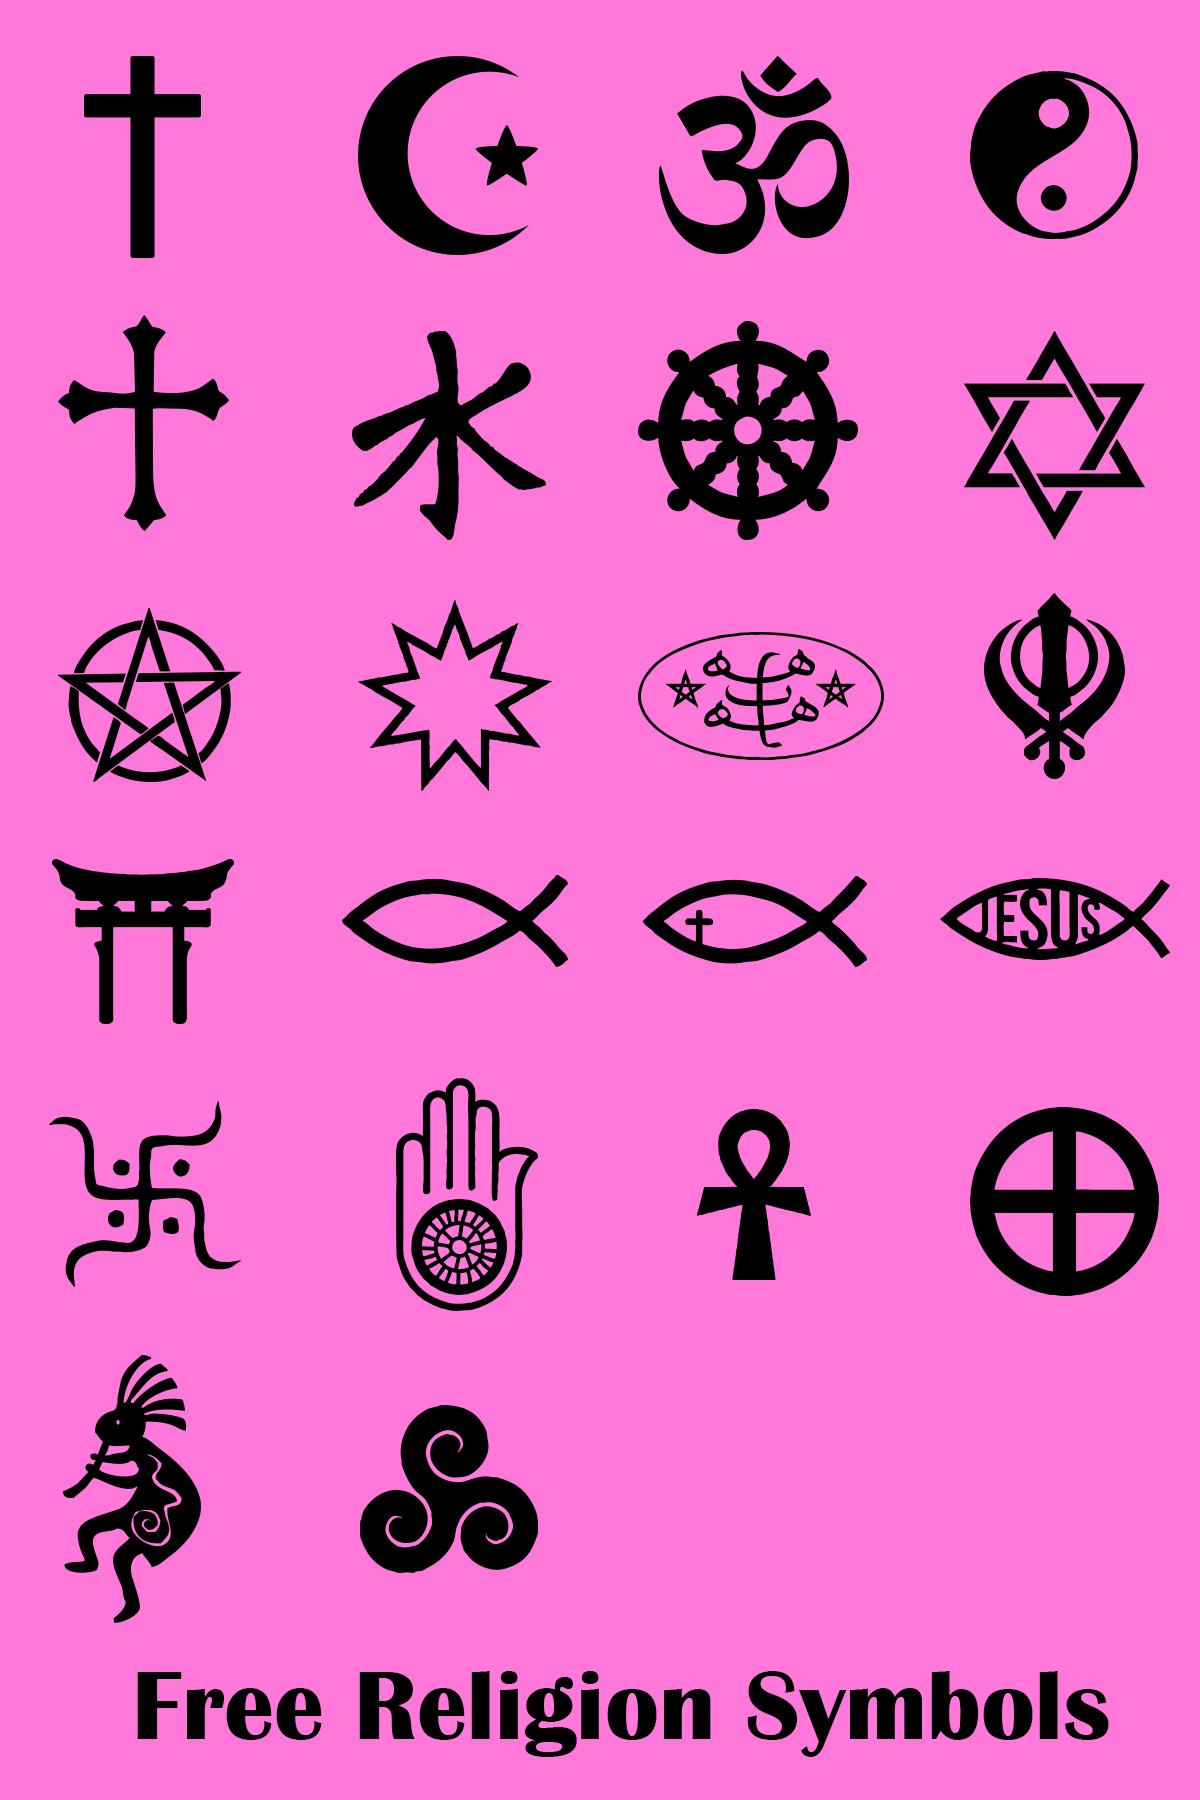 Grunnleggende forståelse av symboler